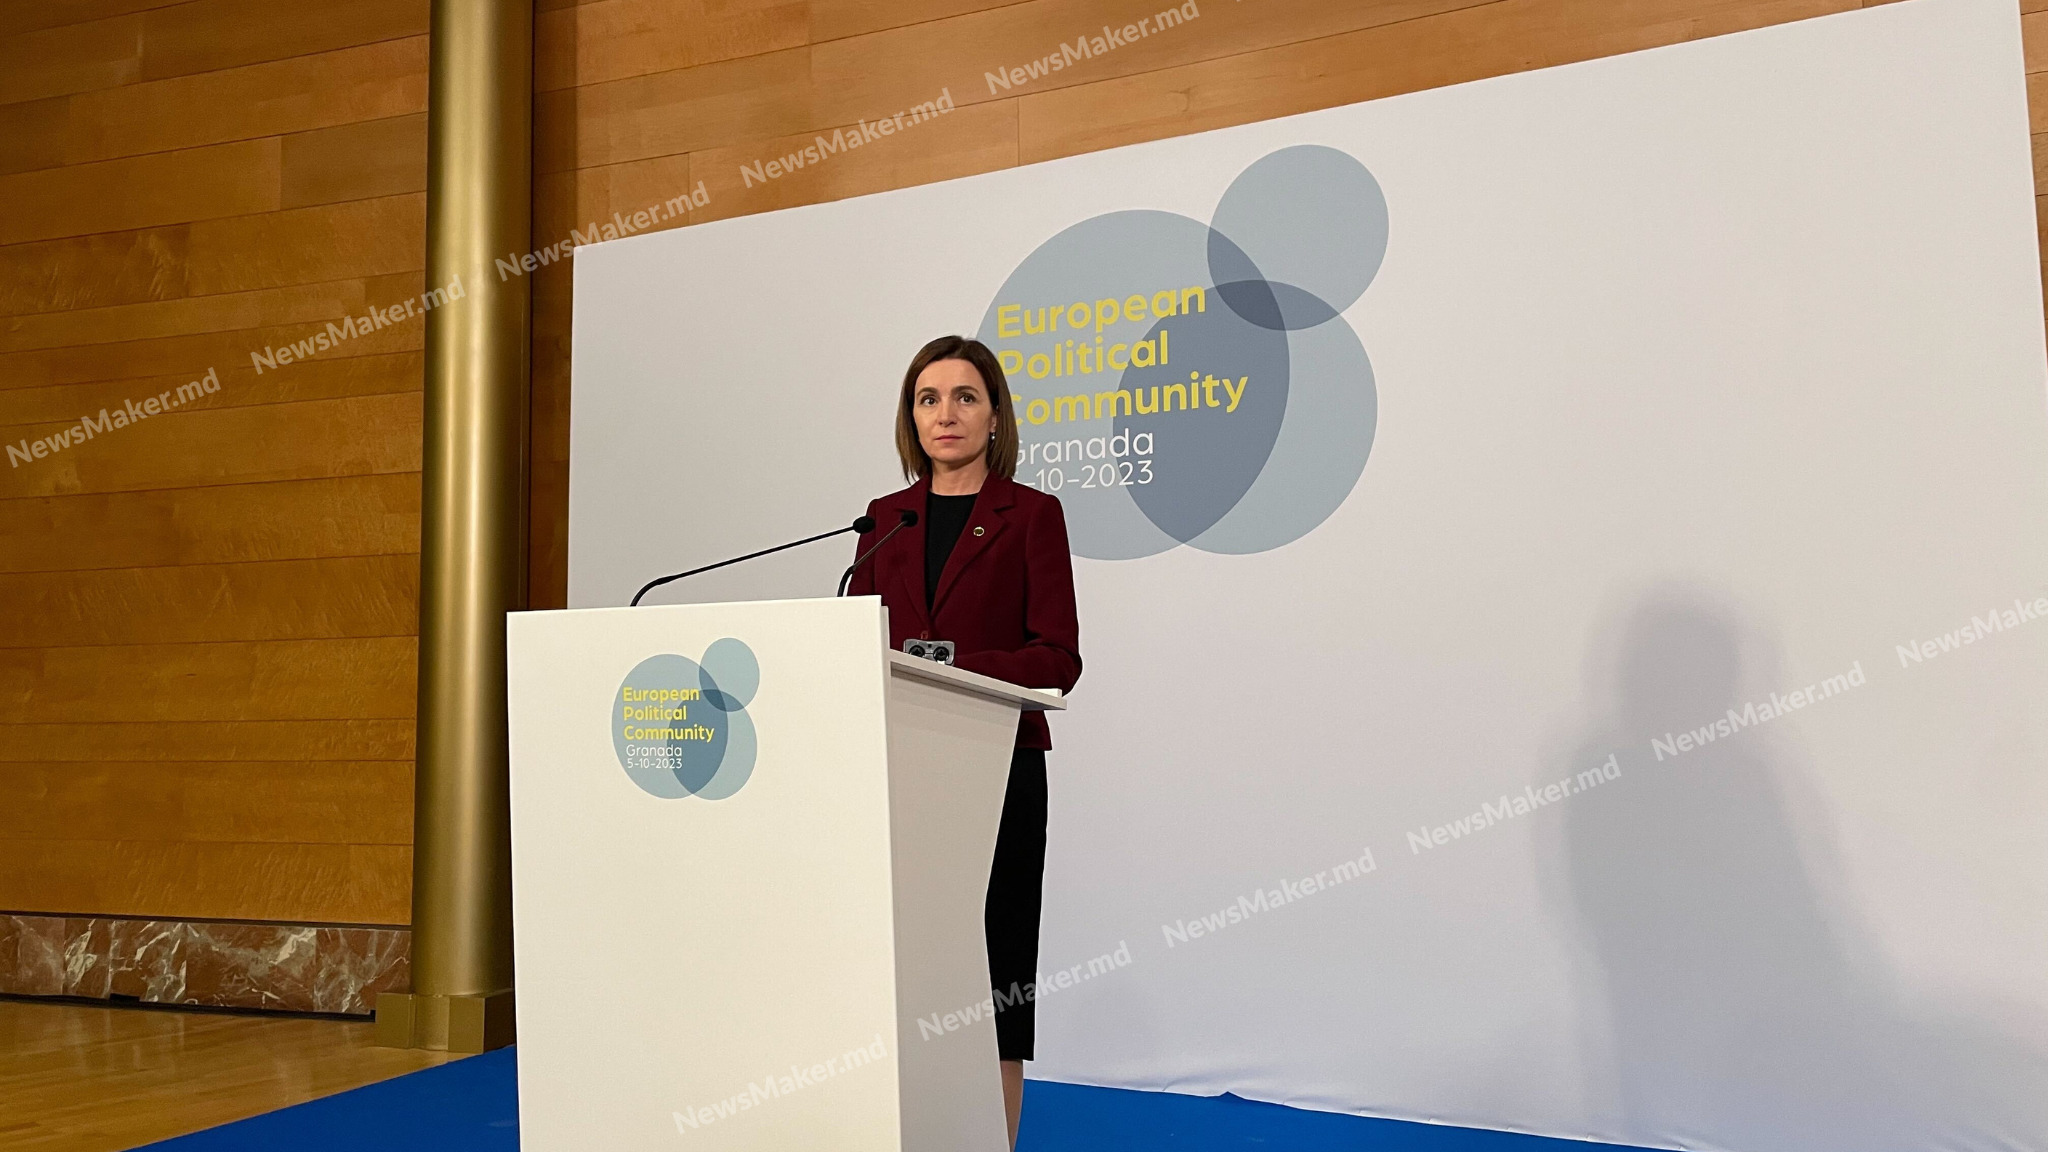 «Moldova was wonderful!» Как прошел саммит Европейского сообщества в Испании, и что не покажут в новостях. Репортаж NM из Гранады